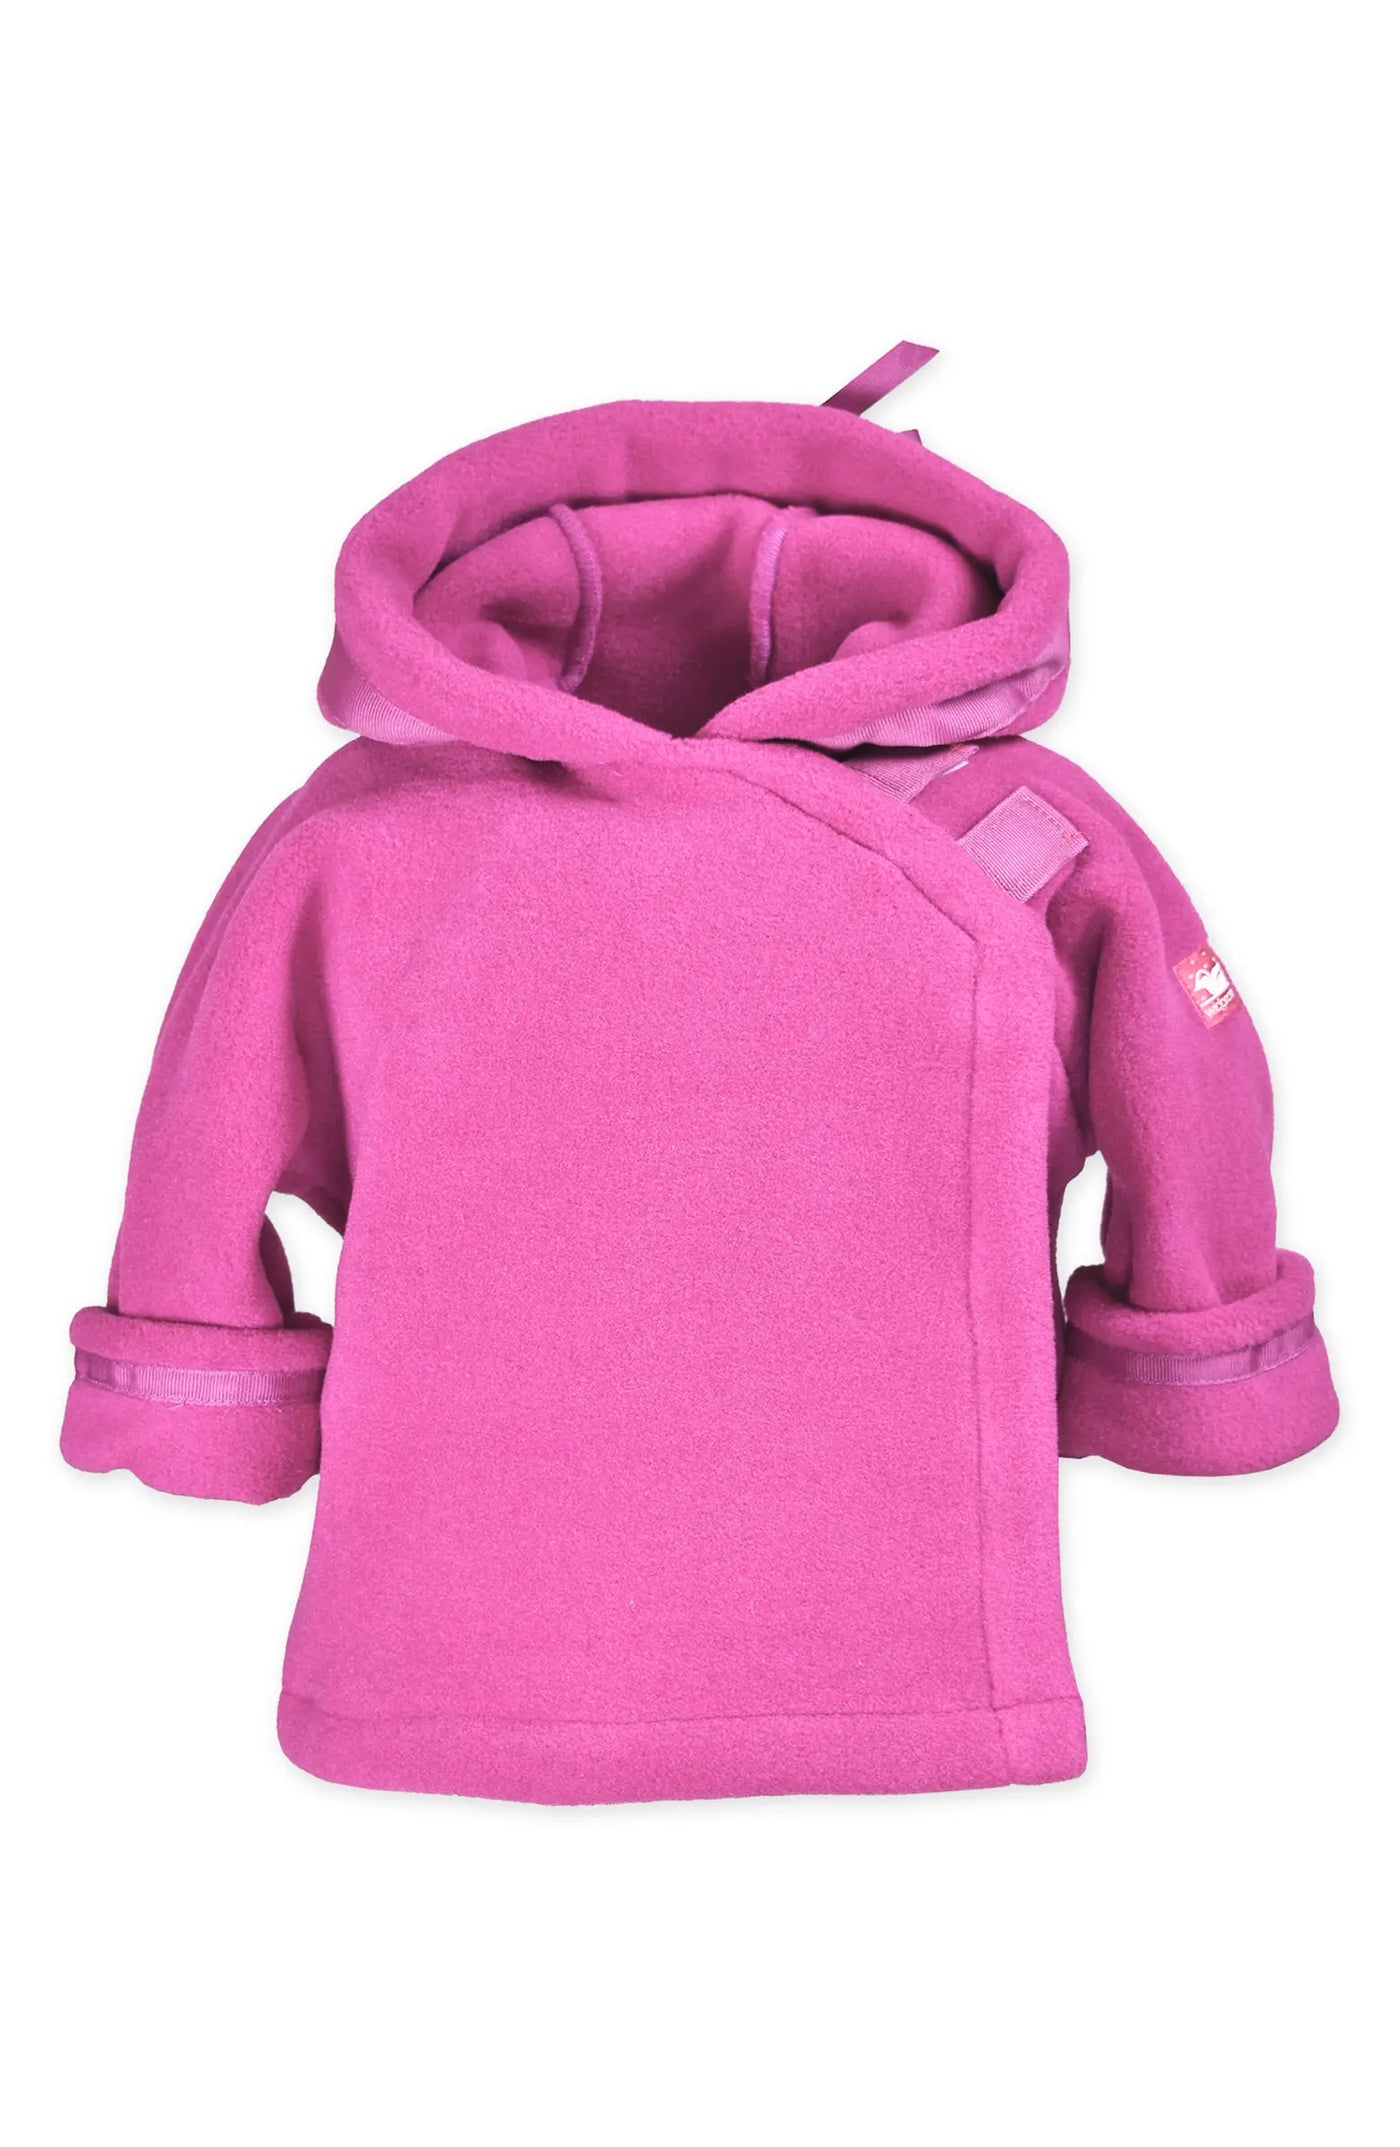 Widgeon Coats Bright Pink